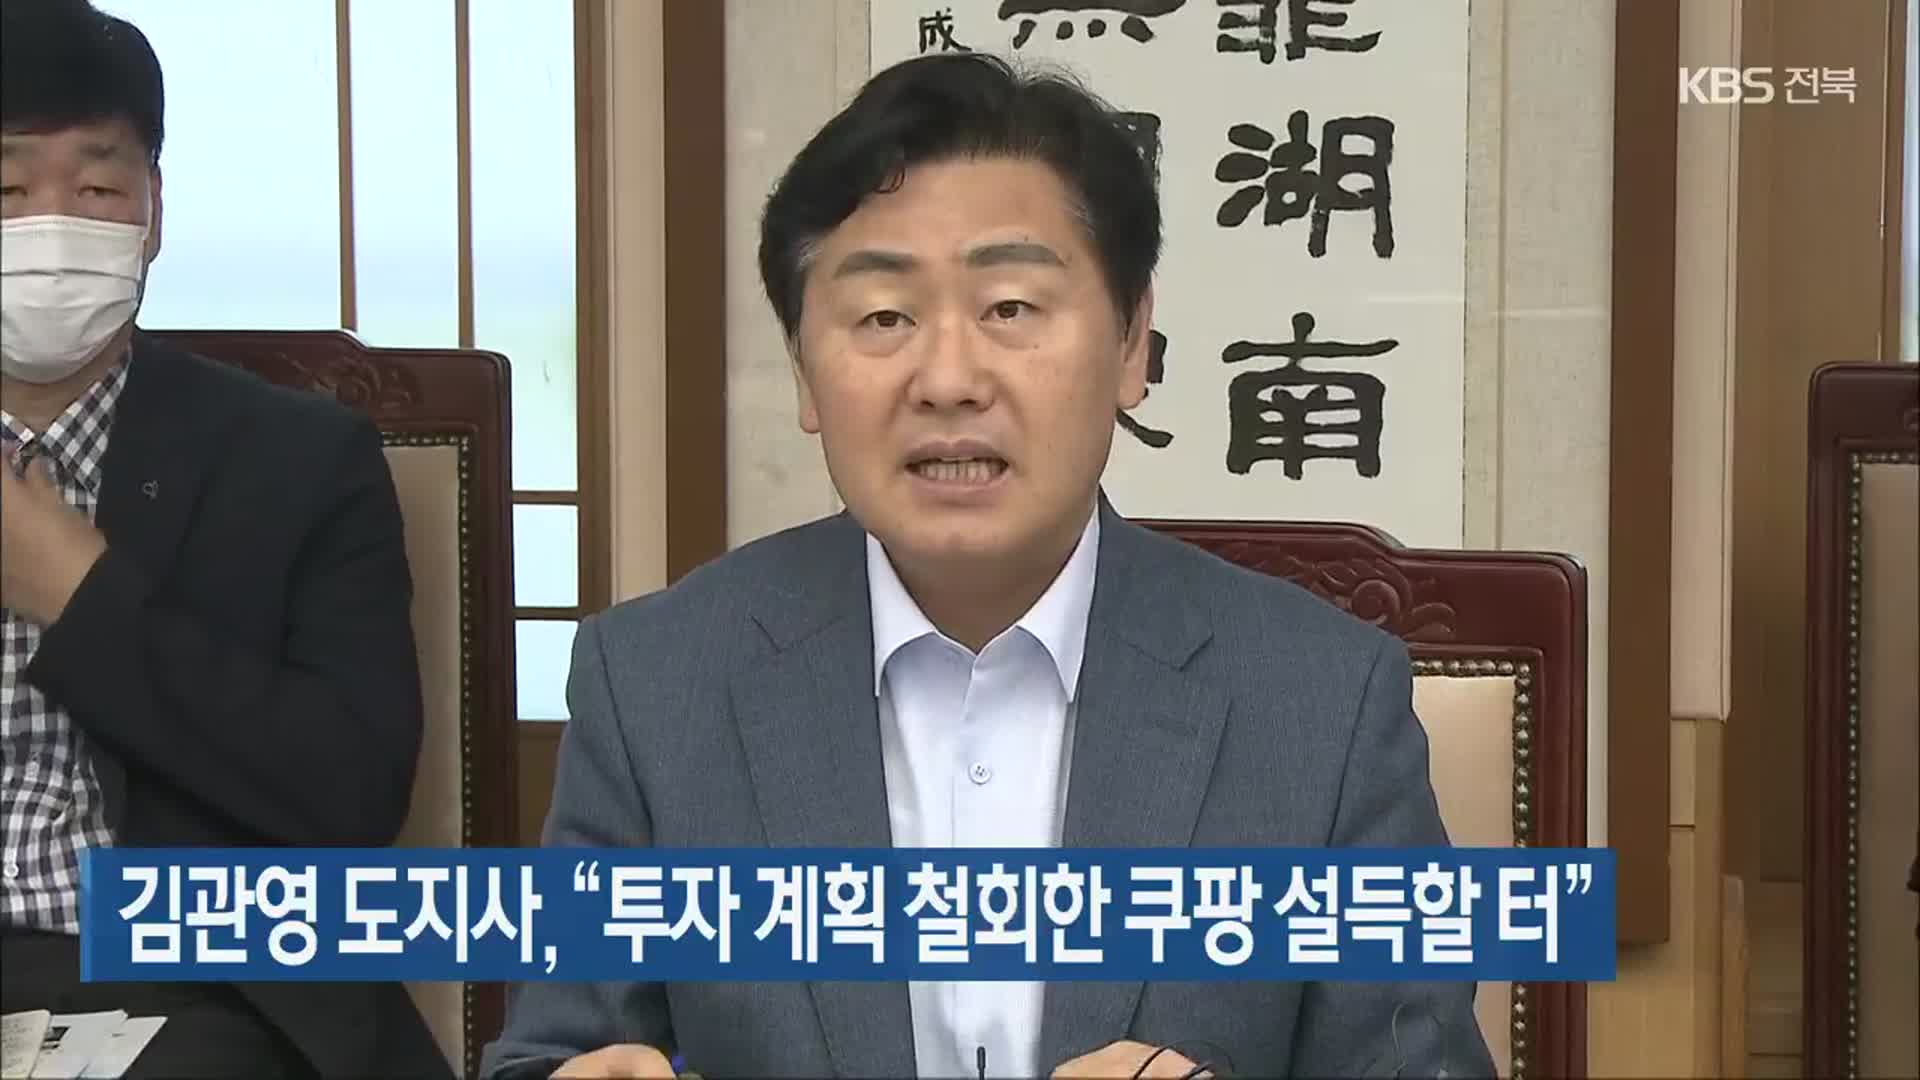 김관영 도지사, “투자 계획 철회한 쿠팡 설득할 터”